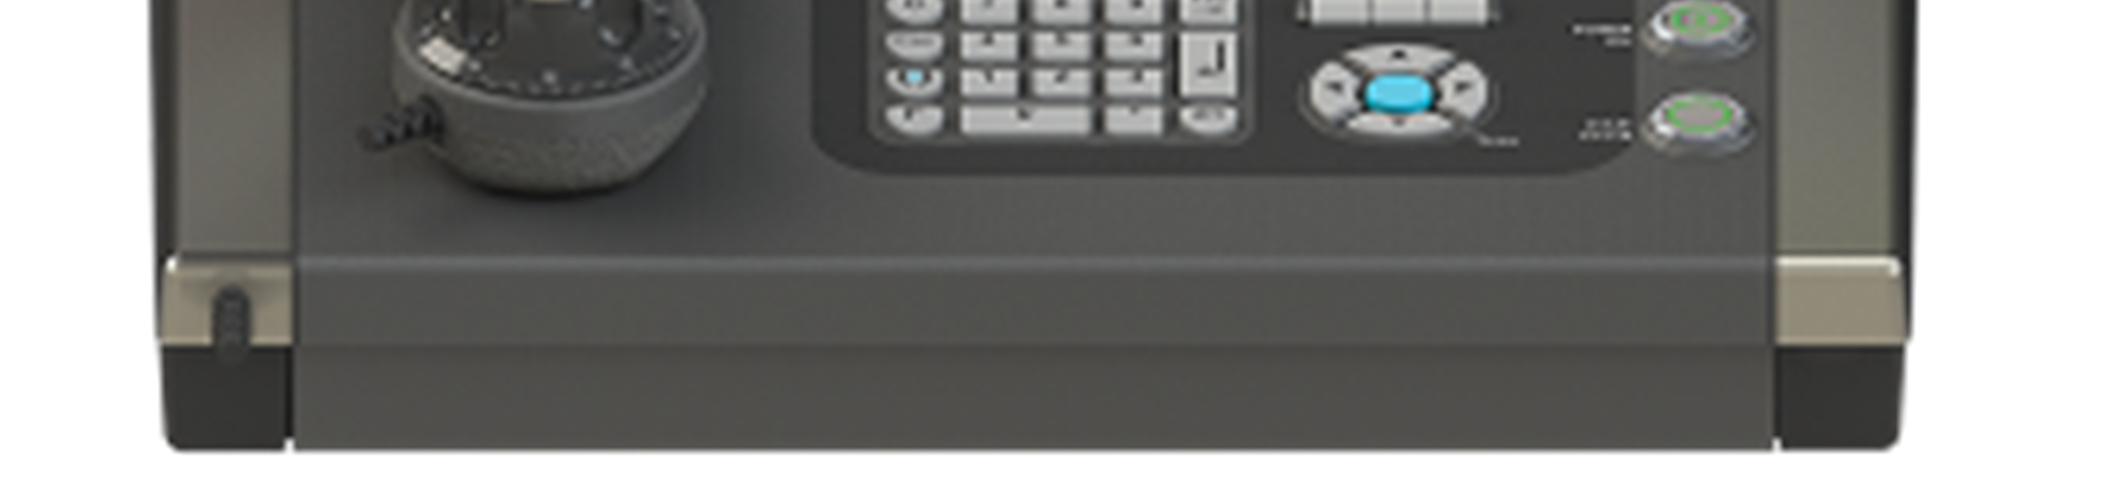 CONTROLLO NUMERICO MAX5 TURN E costituito da 1 monitor a colori da 19 tipo LCD, una tastiera alfanumerica industriale con pochi tastifunzione e dall unità logica montata nella cabina elettrica.